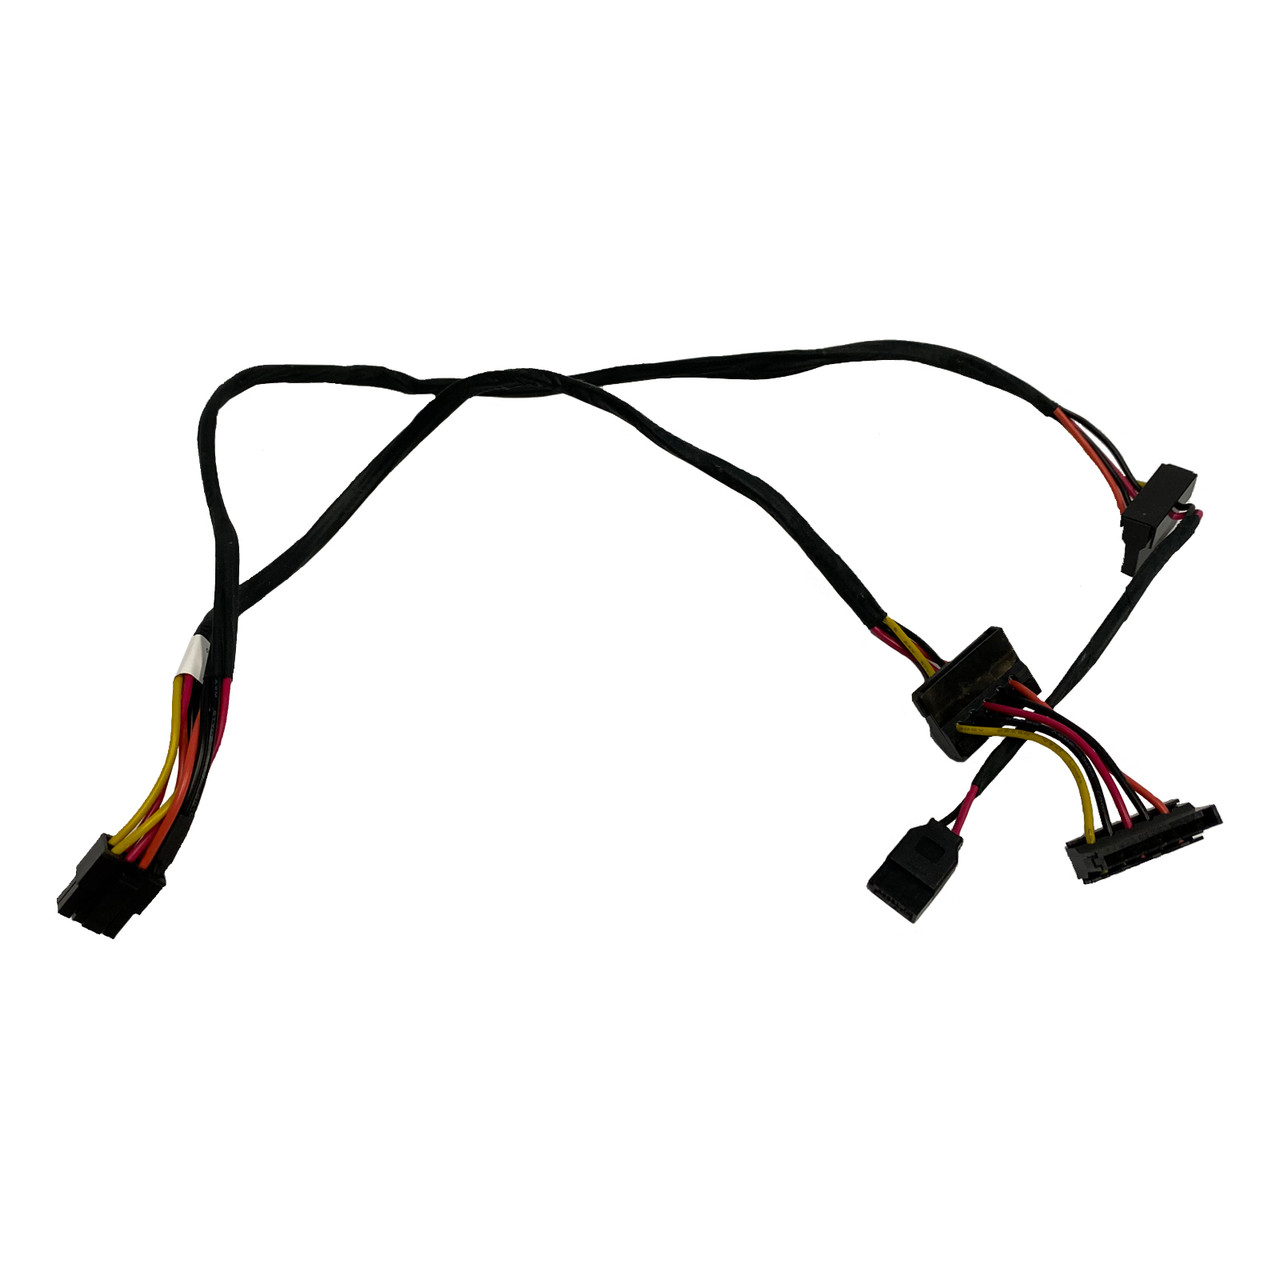 Dell SATA Cable